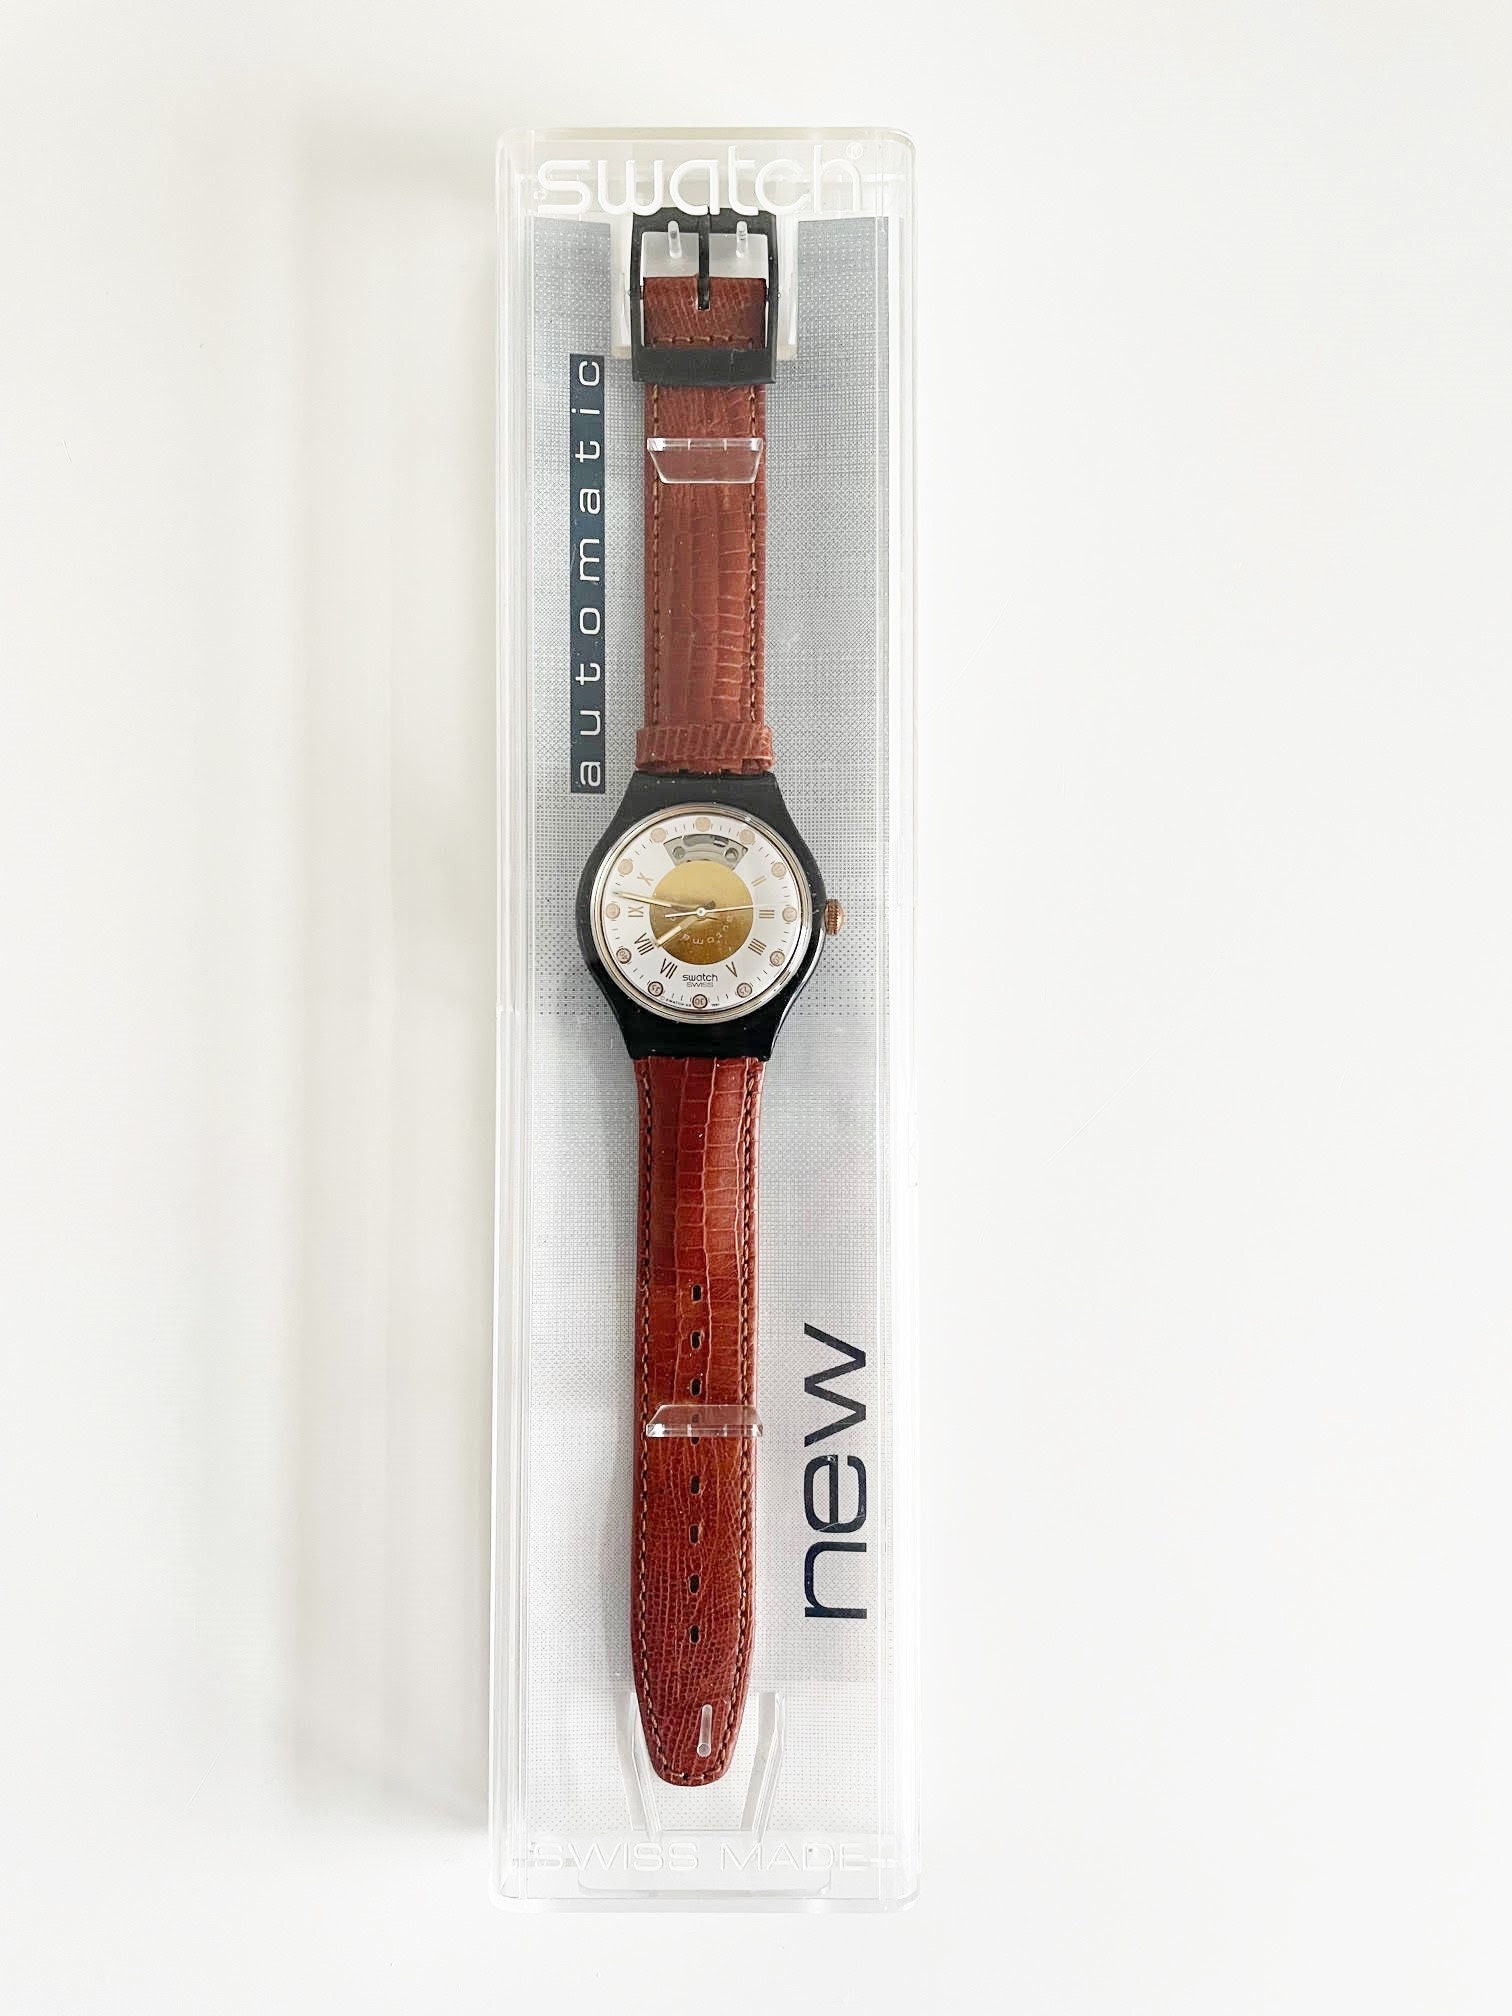 Swatch【スウォッチ】六本木 Roppongi - 時計